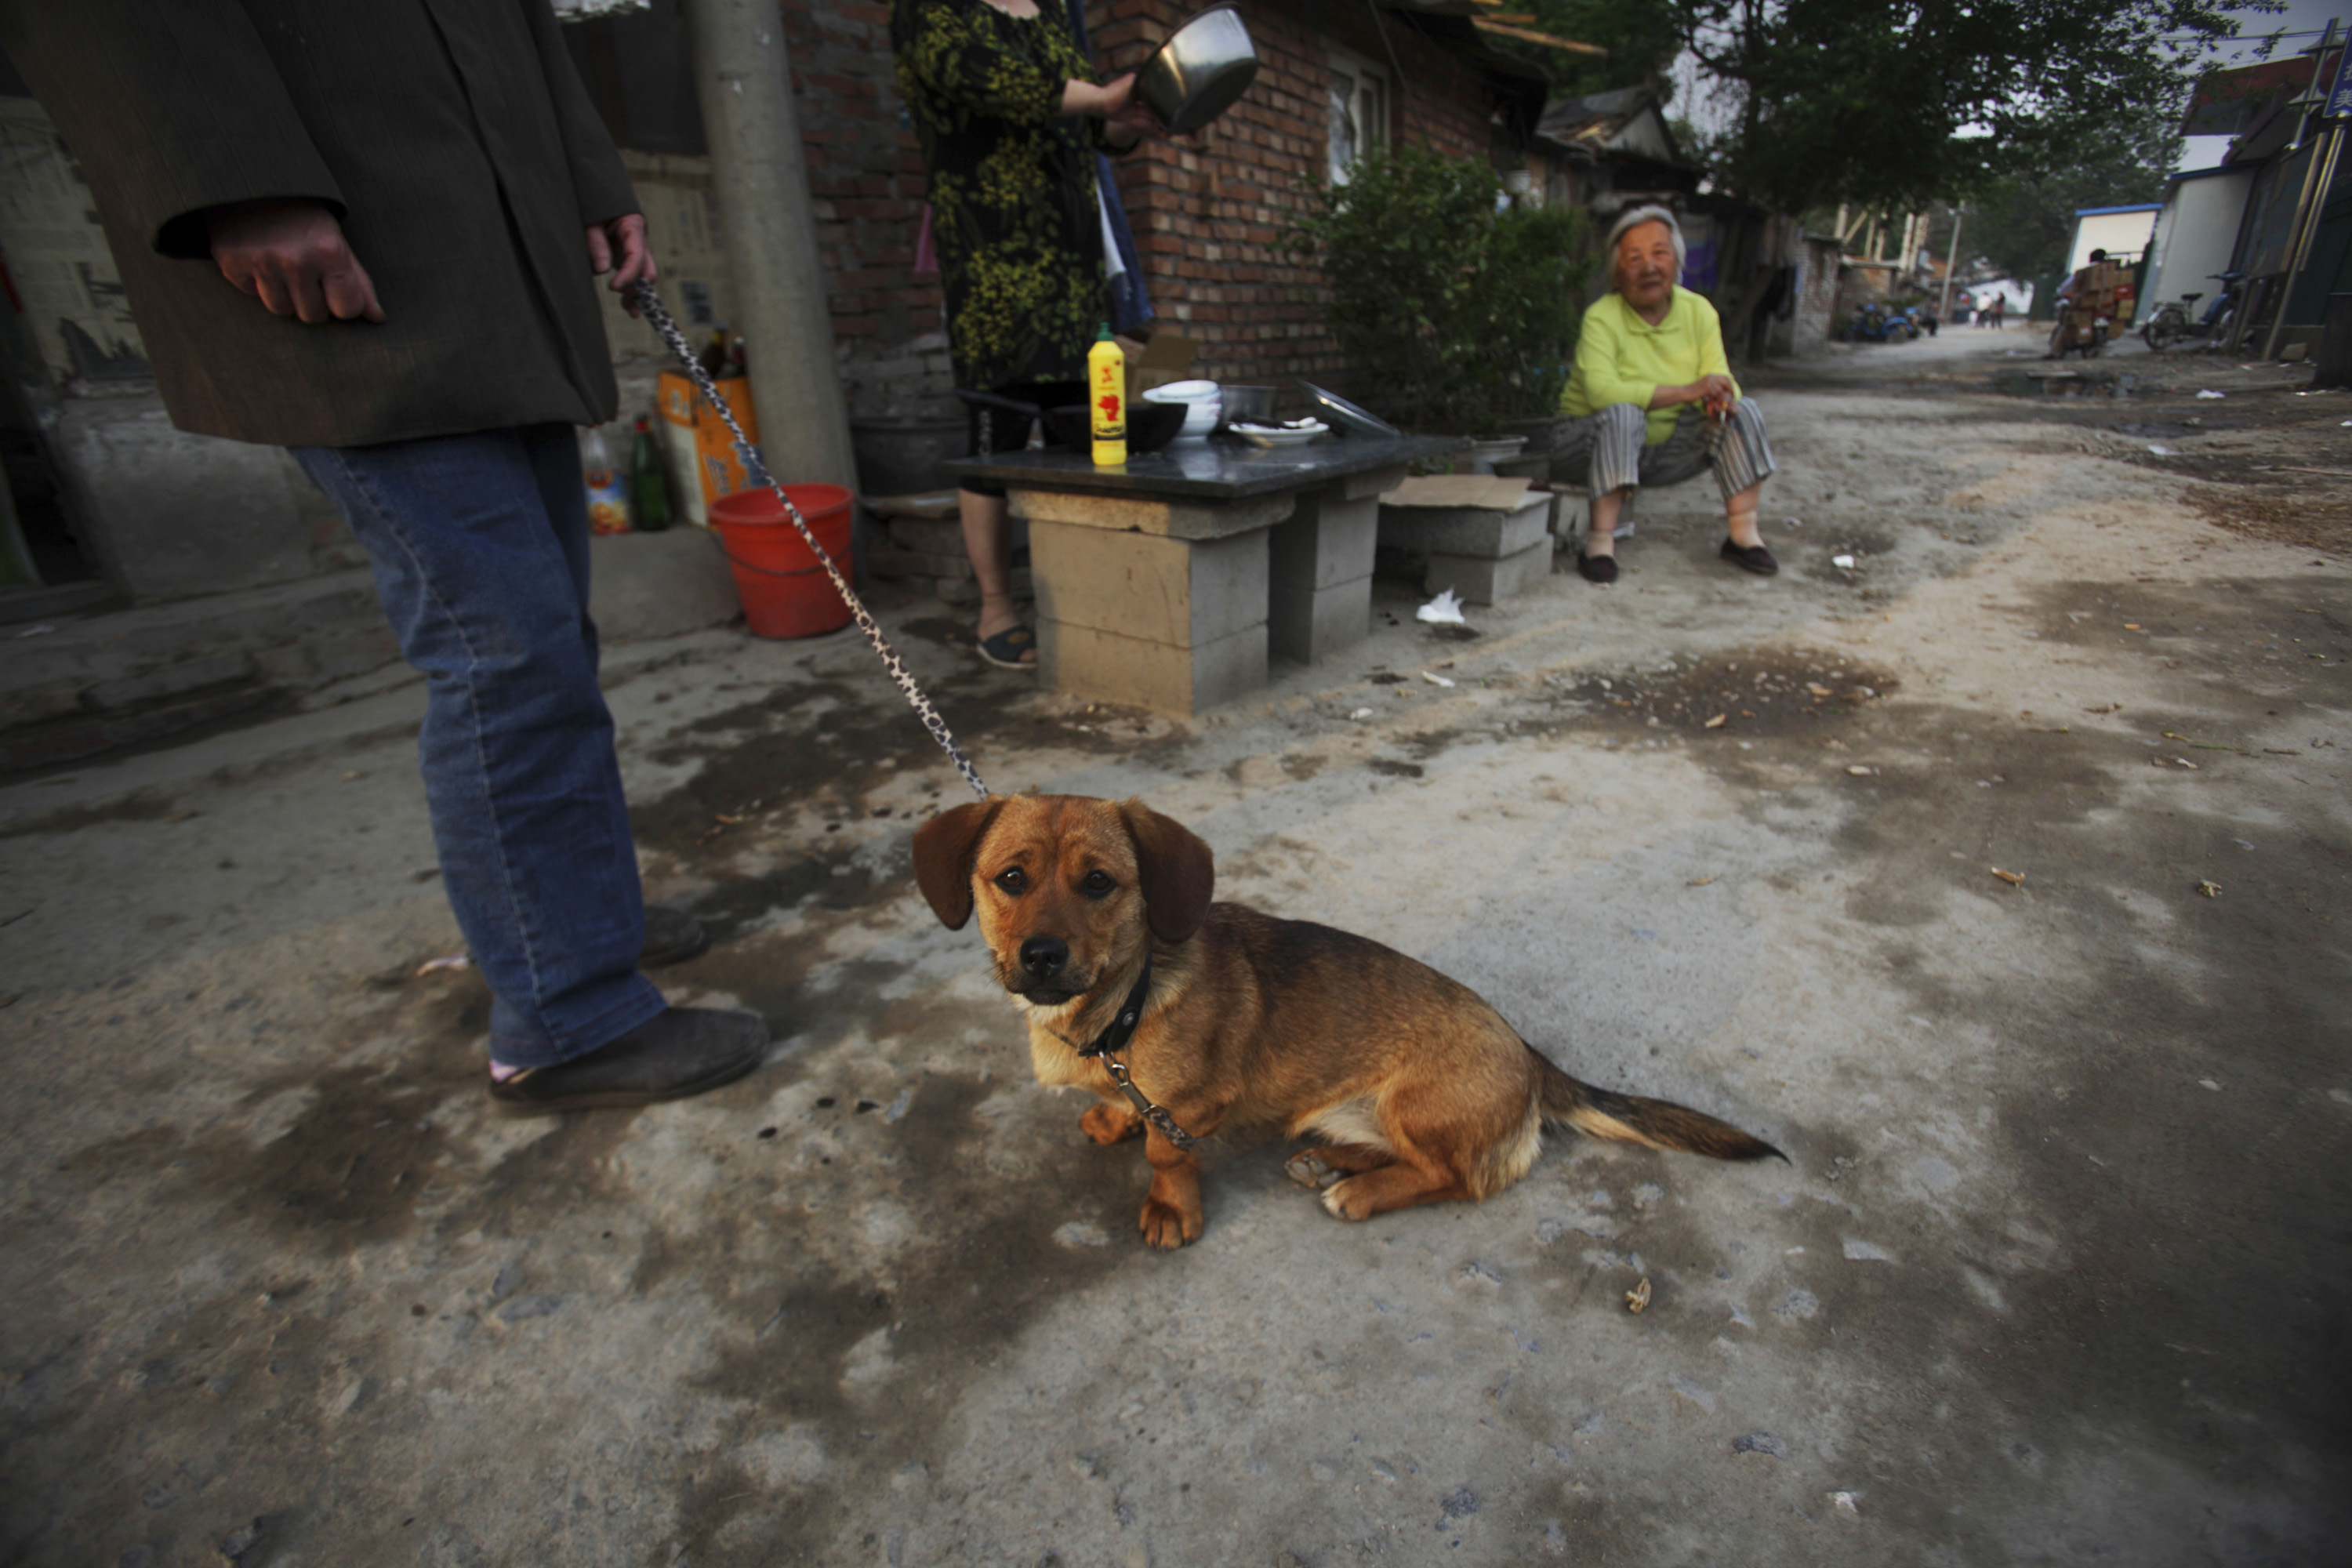 Brott och straff, Djur, Hund, Shanghai, Kina